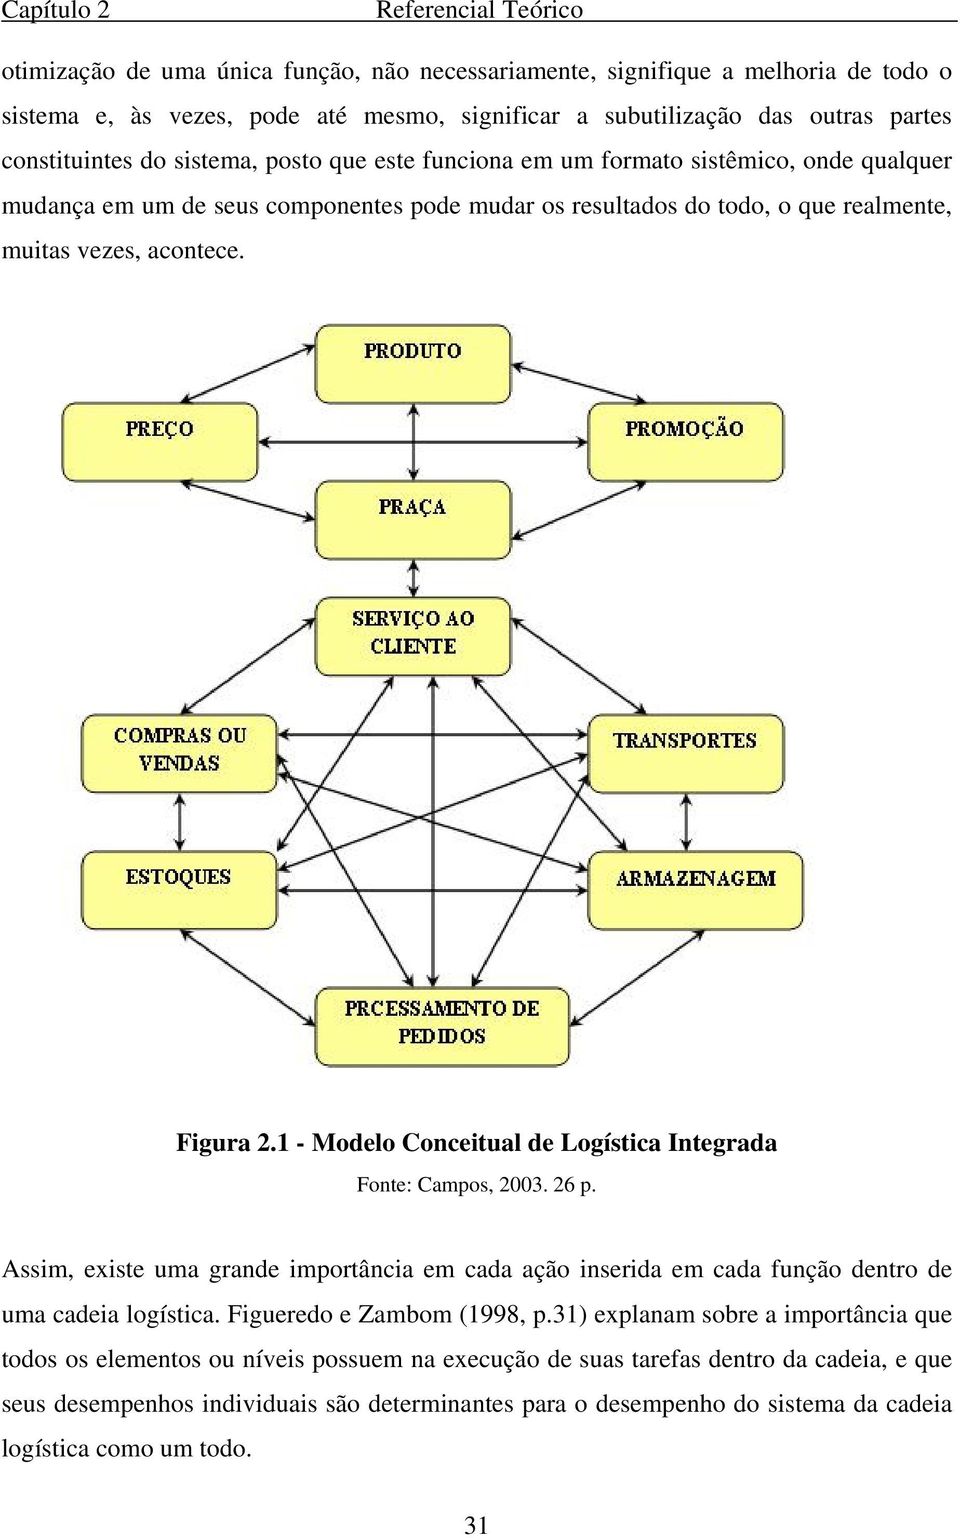 Figura 2.1 - Modelo Conceitual de Logística Integrada Fonte: Campos, 2003. 26 p. Assim, existe uma grande importância em cada ação inserida em cada função dentro de uma cadeia logística.